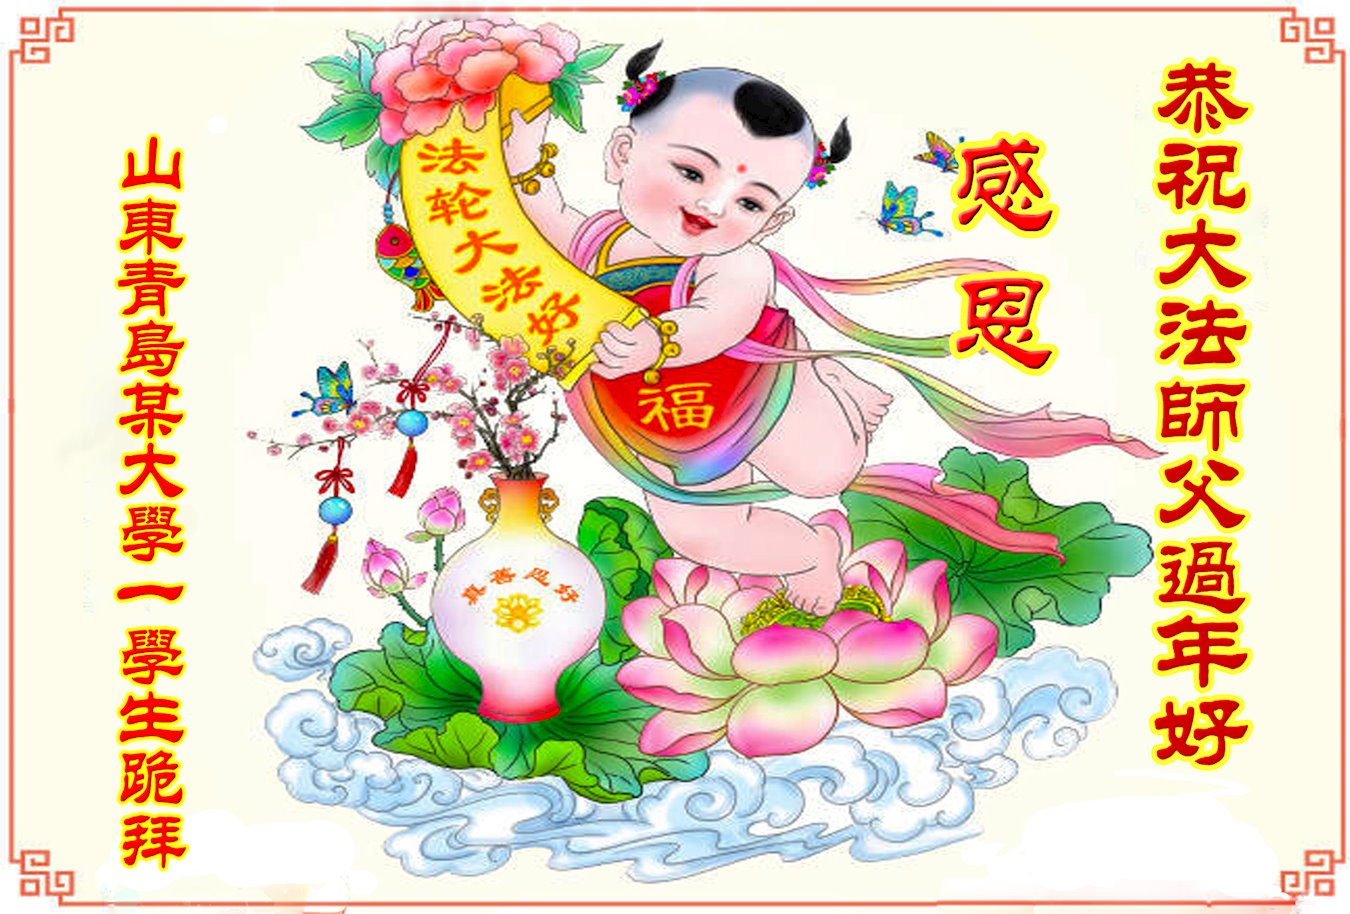 Image for article Les sympathisants du Falun Dafa souhaitent au vénérable Maître Li un bon Nouvel An chinois